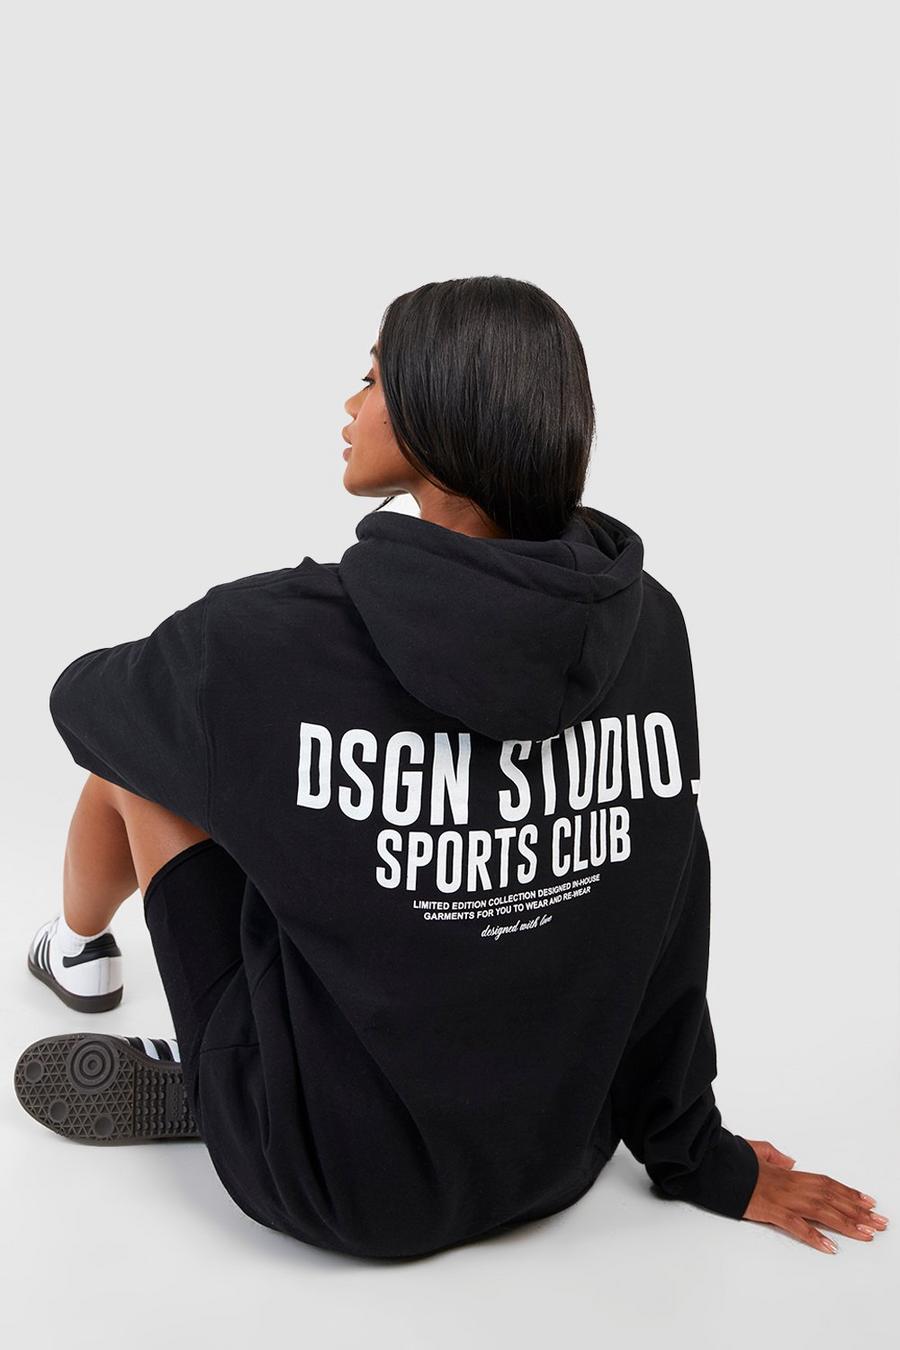 Sudadera oversize con capucha y eslogan Dsgn Studio Sports Club, Black